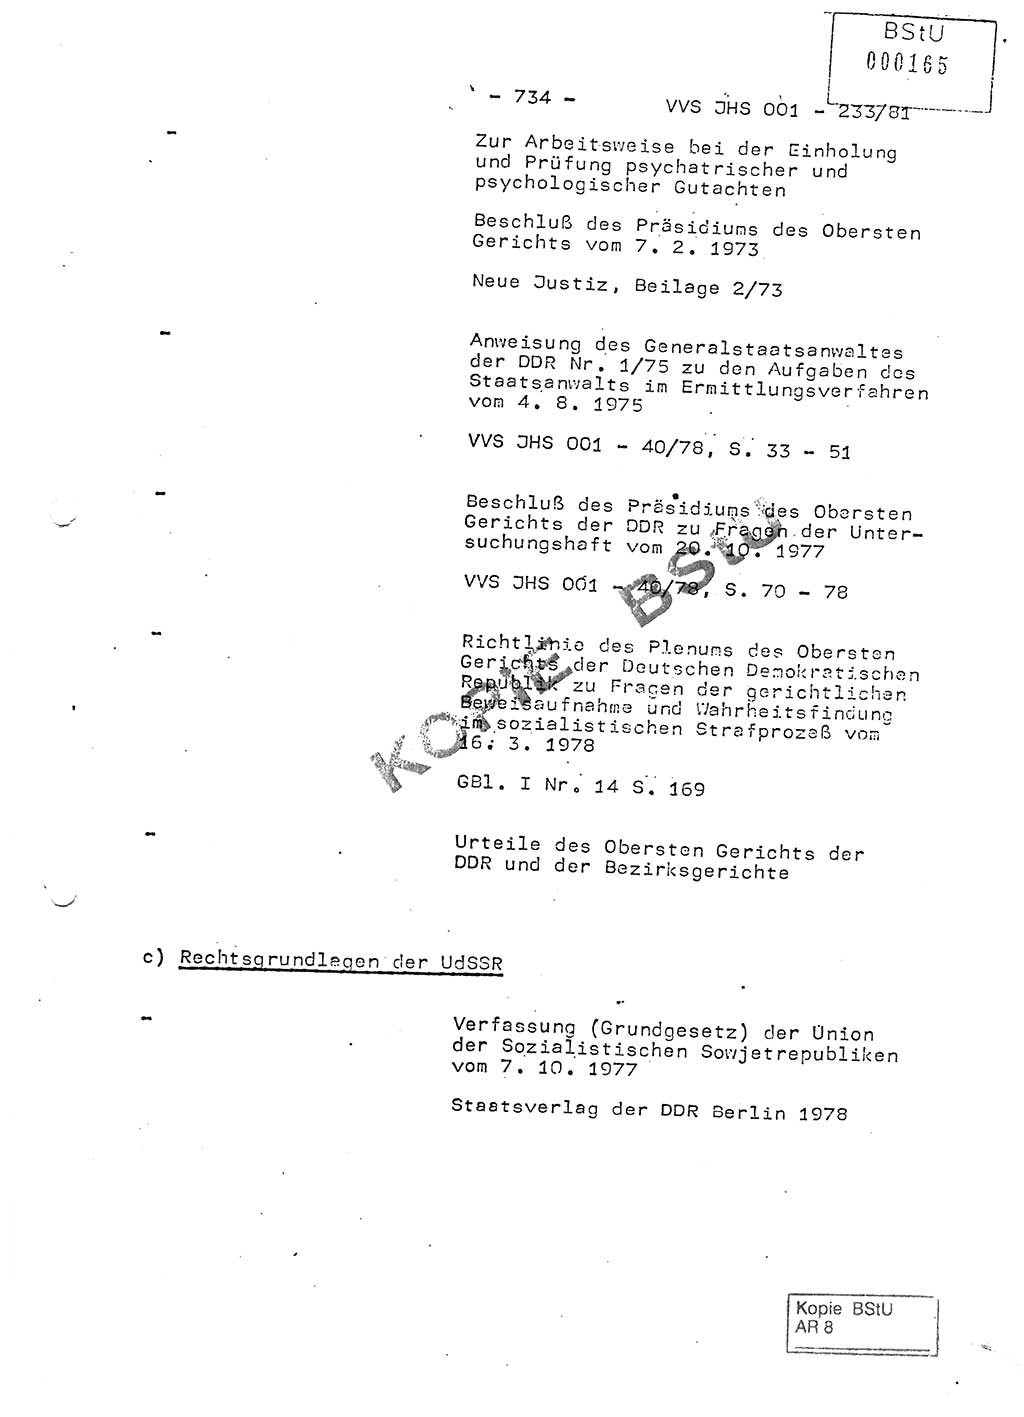 Dissertation Oberstleutnant Horst Zank (JHS), Oberstleutnant Dr. Karl-Heinz Knoblauch (JHS), Oberstleutnant Gustav-Adolf Kowalewski (HA Ⅸ), Oberstleutnant Wolfgang Plötner (HA Ⅸ), Ministerium für Staatssicherheit (MfS) [Deutsche Demokratische Republik (DDR)], Juristische Hochschule (JHS), Vertrauliche Verschlußsache (VVS) o001-233/81, Potsdam 1981, Blatt 734 (Diss. MfS DDR JHS VVS o001-233/81 1981, Bl. 734)